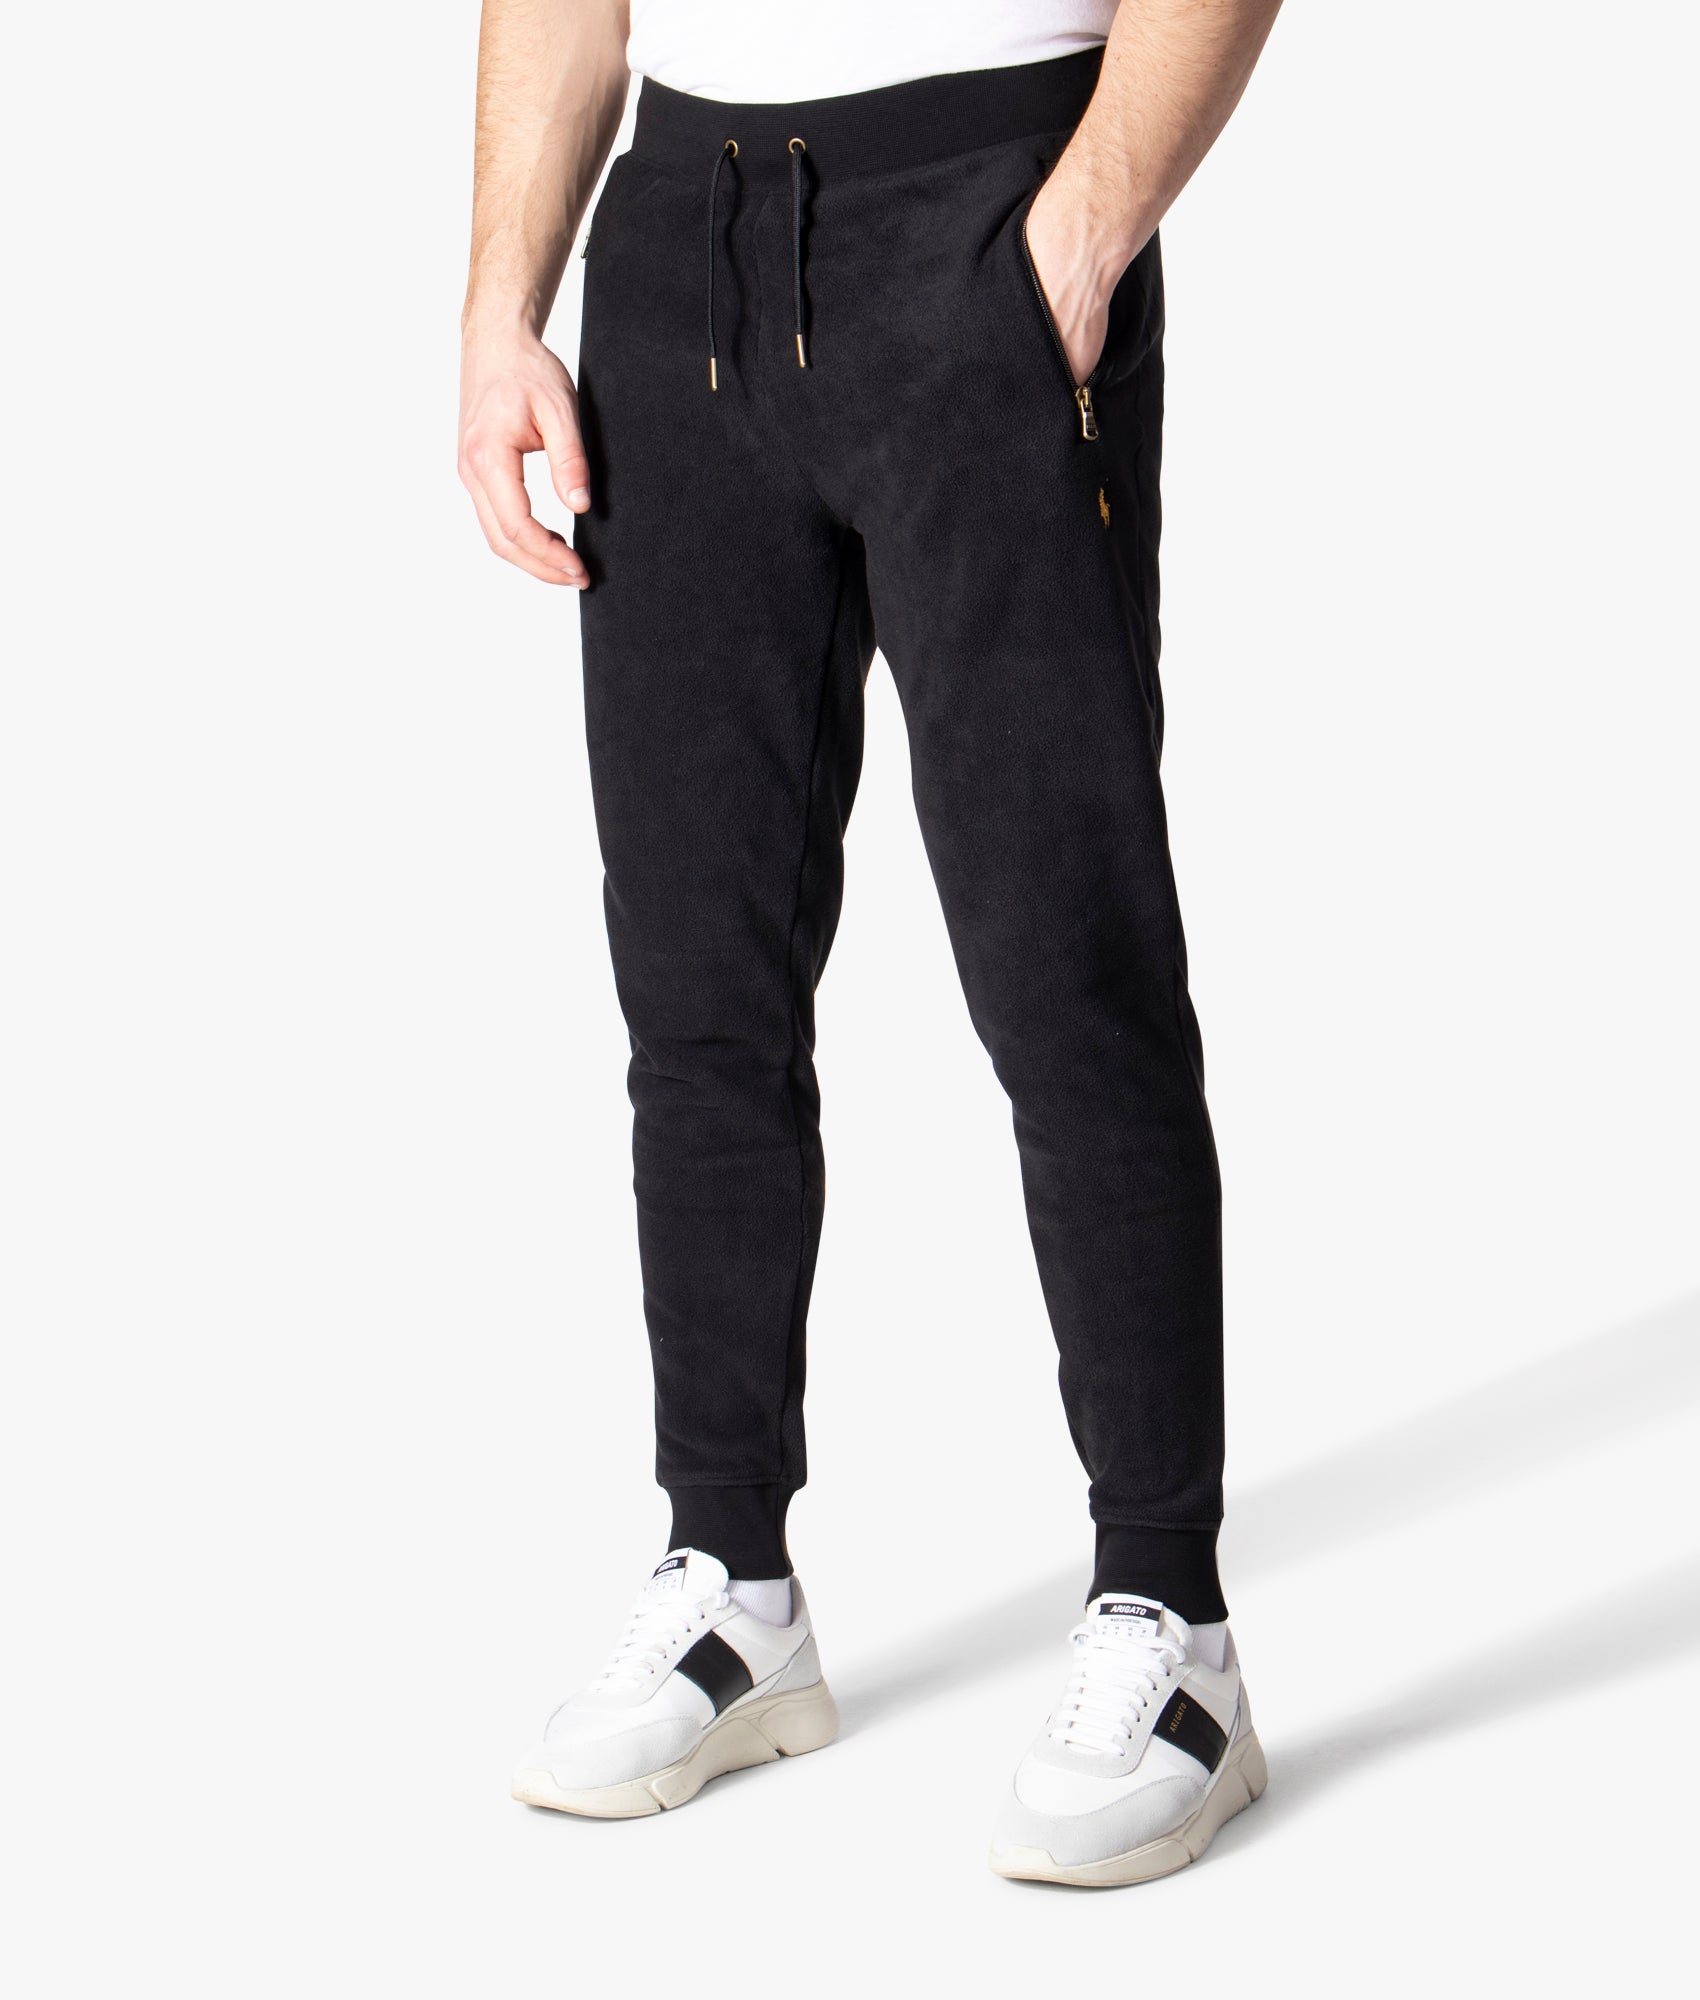 Popantm6-Athletic Jogger Pants, Polo Ralph Lauren